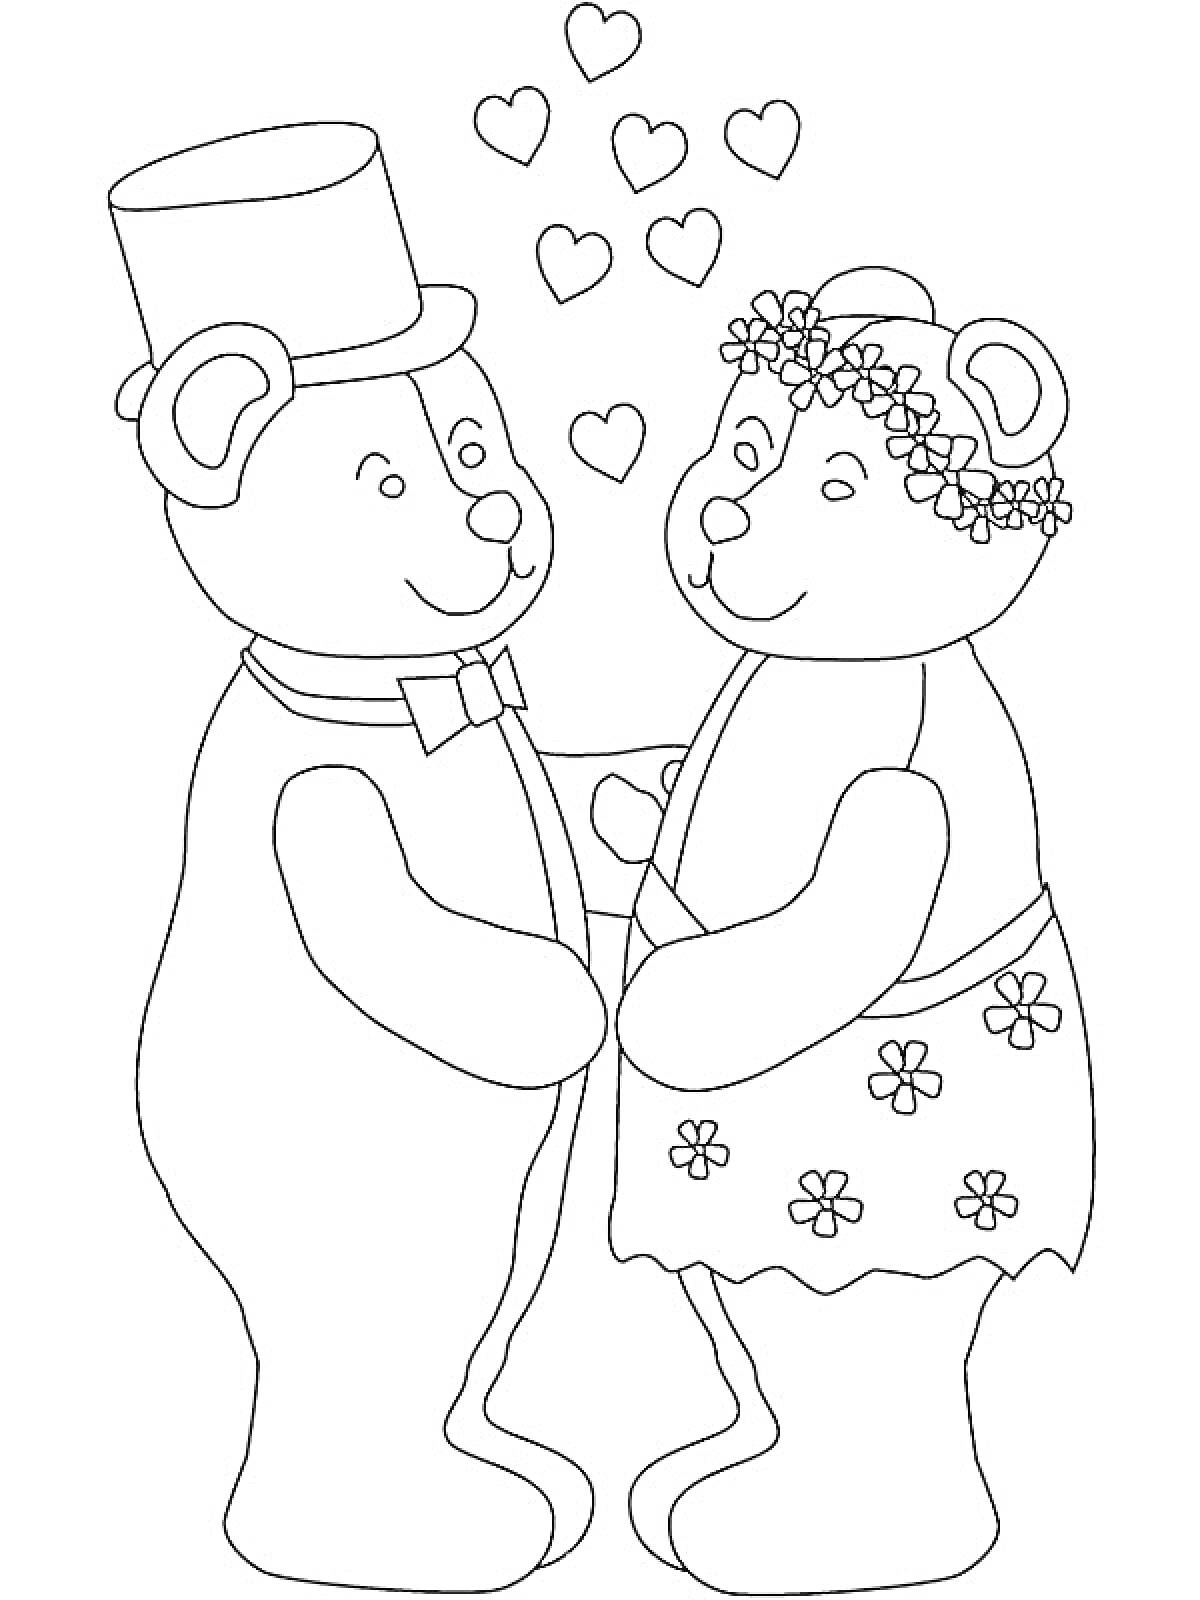 Раскраска Медвежата на свадьбе с сердцами